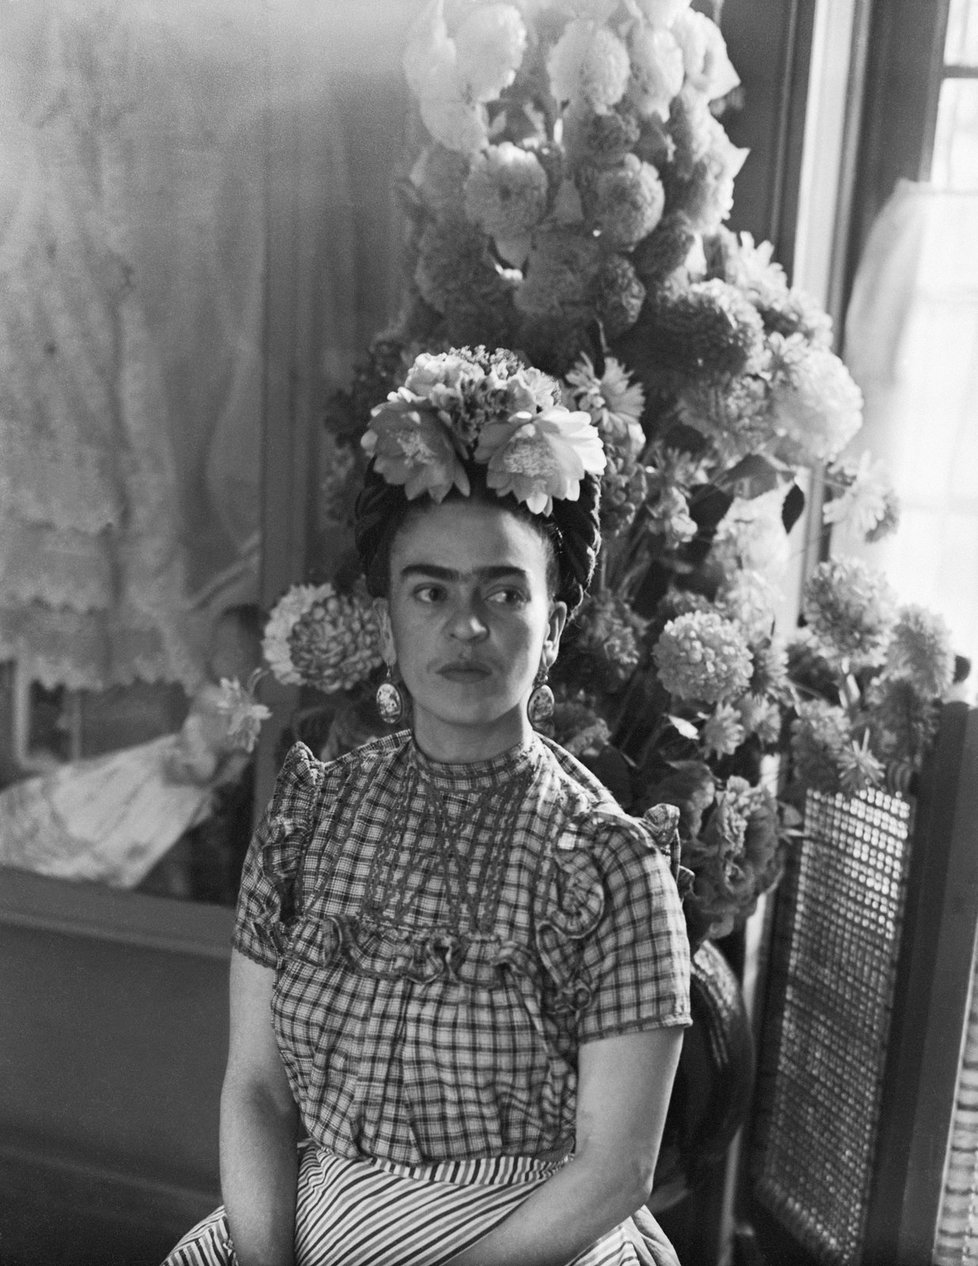 Magdalena Carmen Frida Kahlo y Calderón namalovala stovky obrazů, převážně autoportrétů.